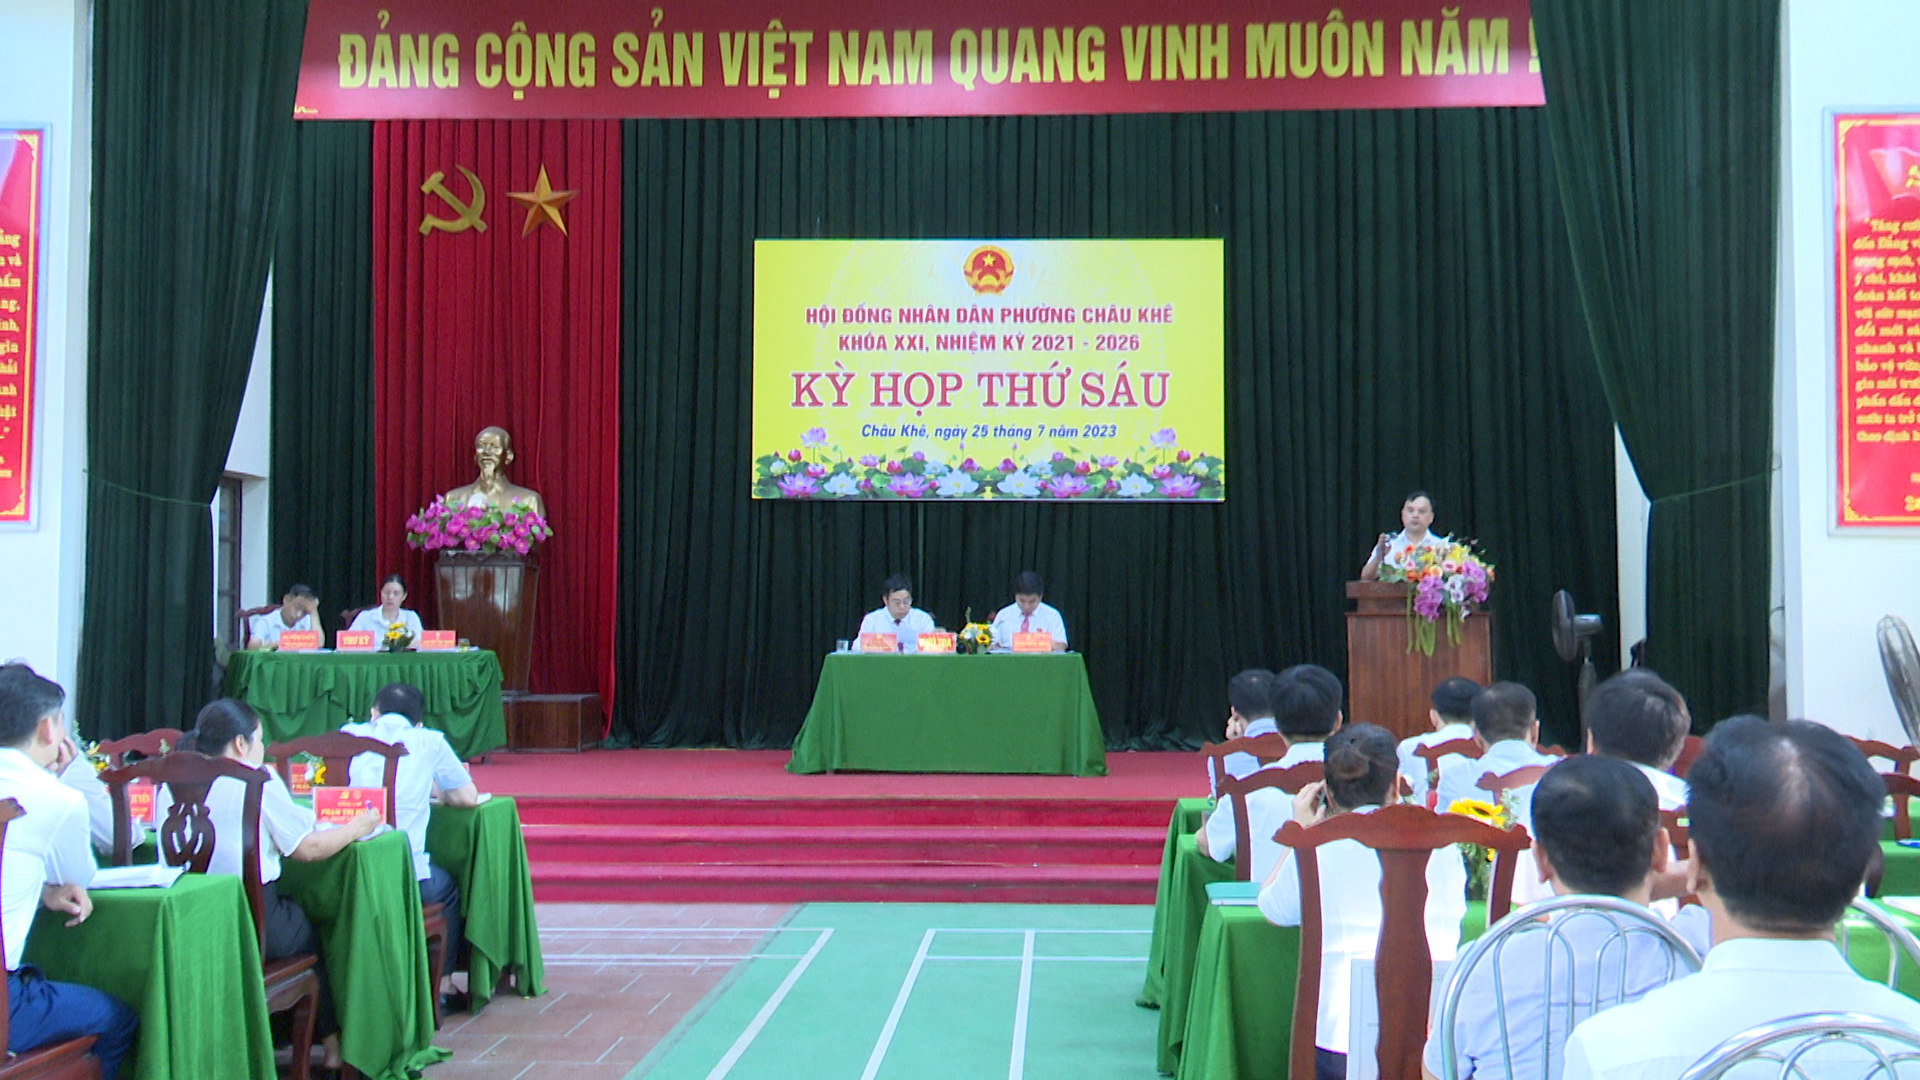 HĐND phường Châu Khê khóa XXI tổ chức kỳ họp thứ 6